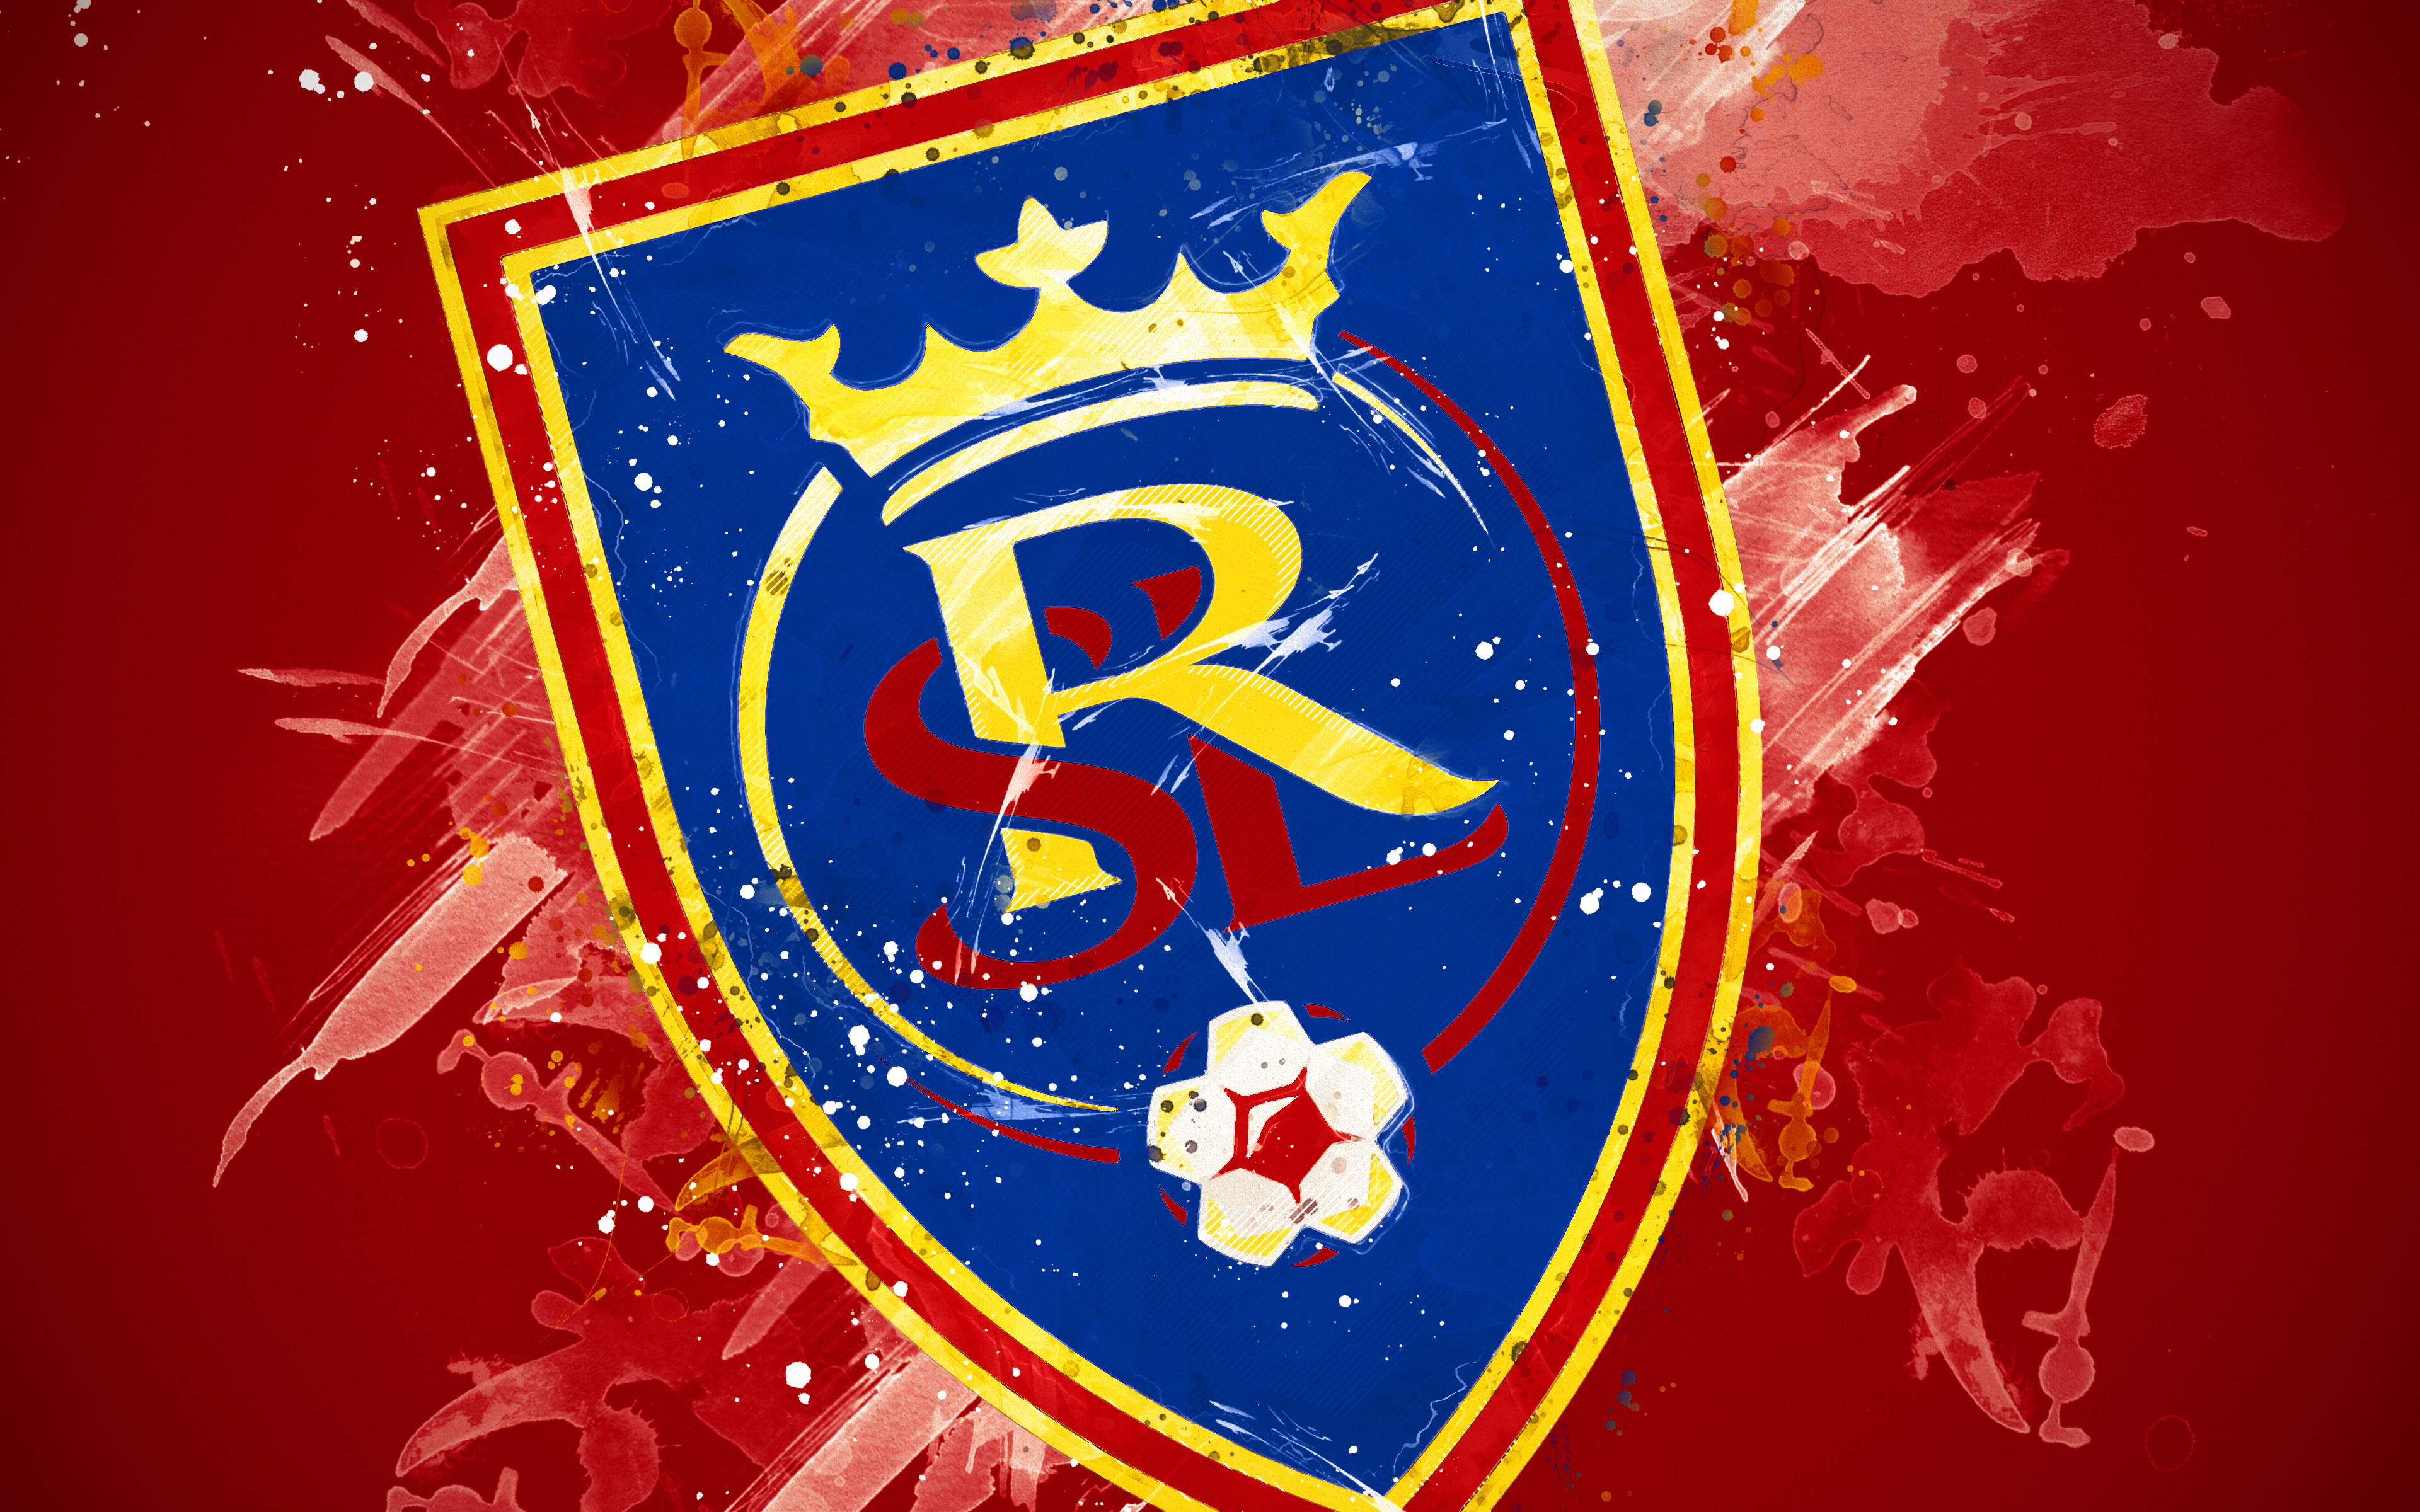 Download mobile wallpaper Sports, Logo, Emblem, Soccer, Mls, Real Salt Lake for free.